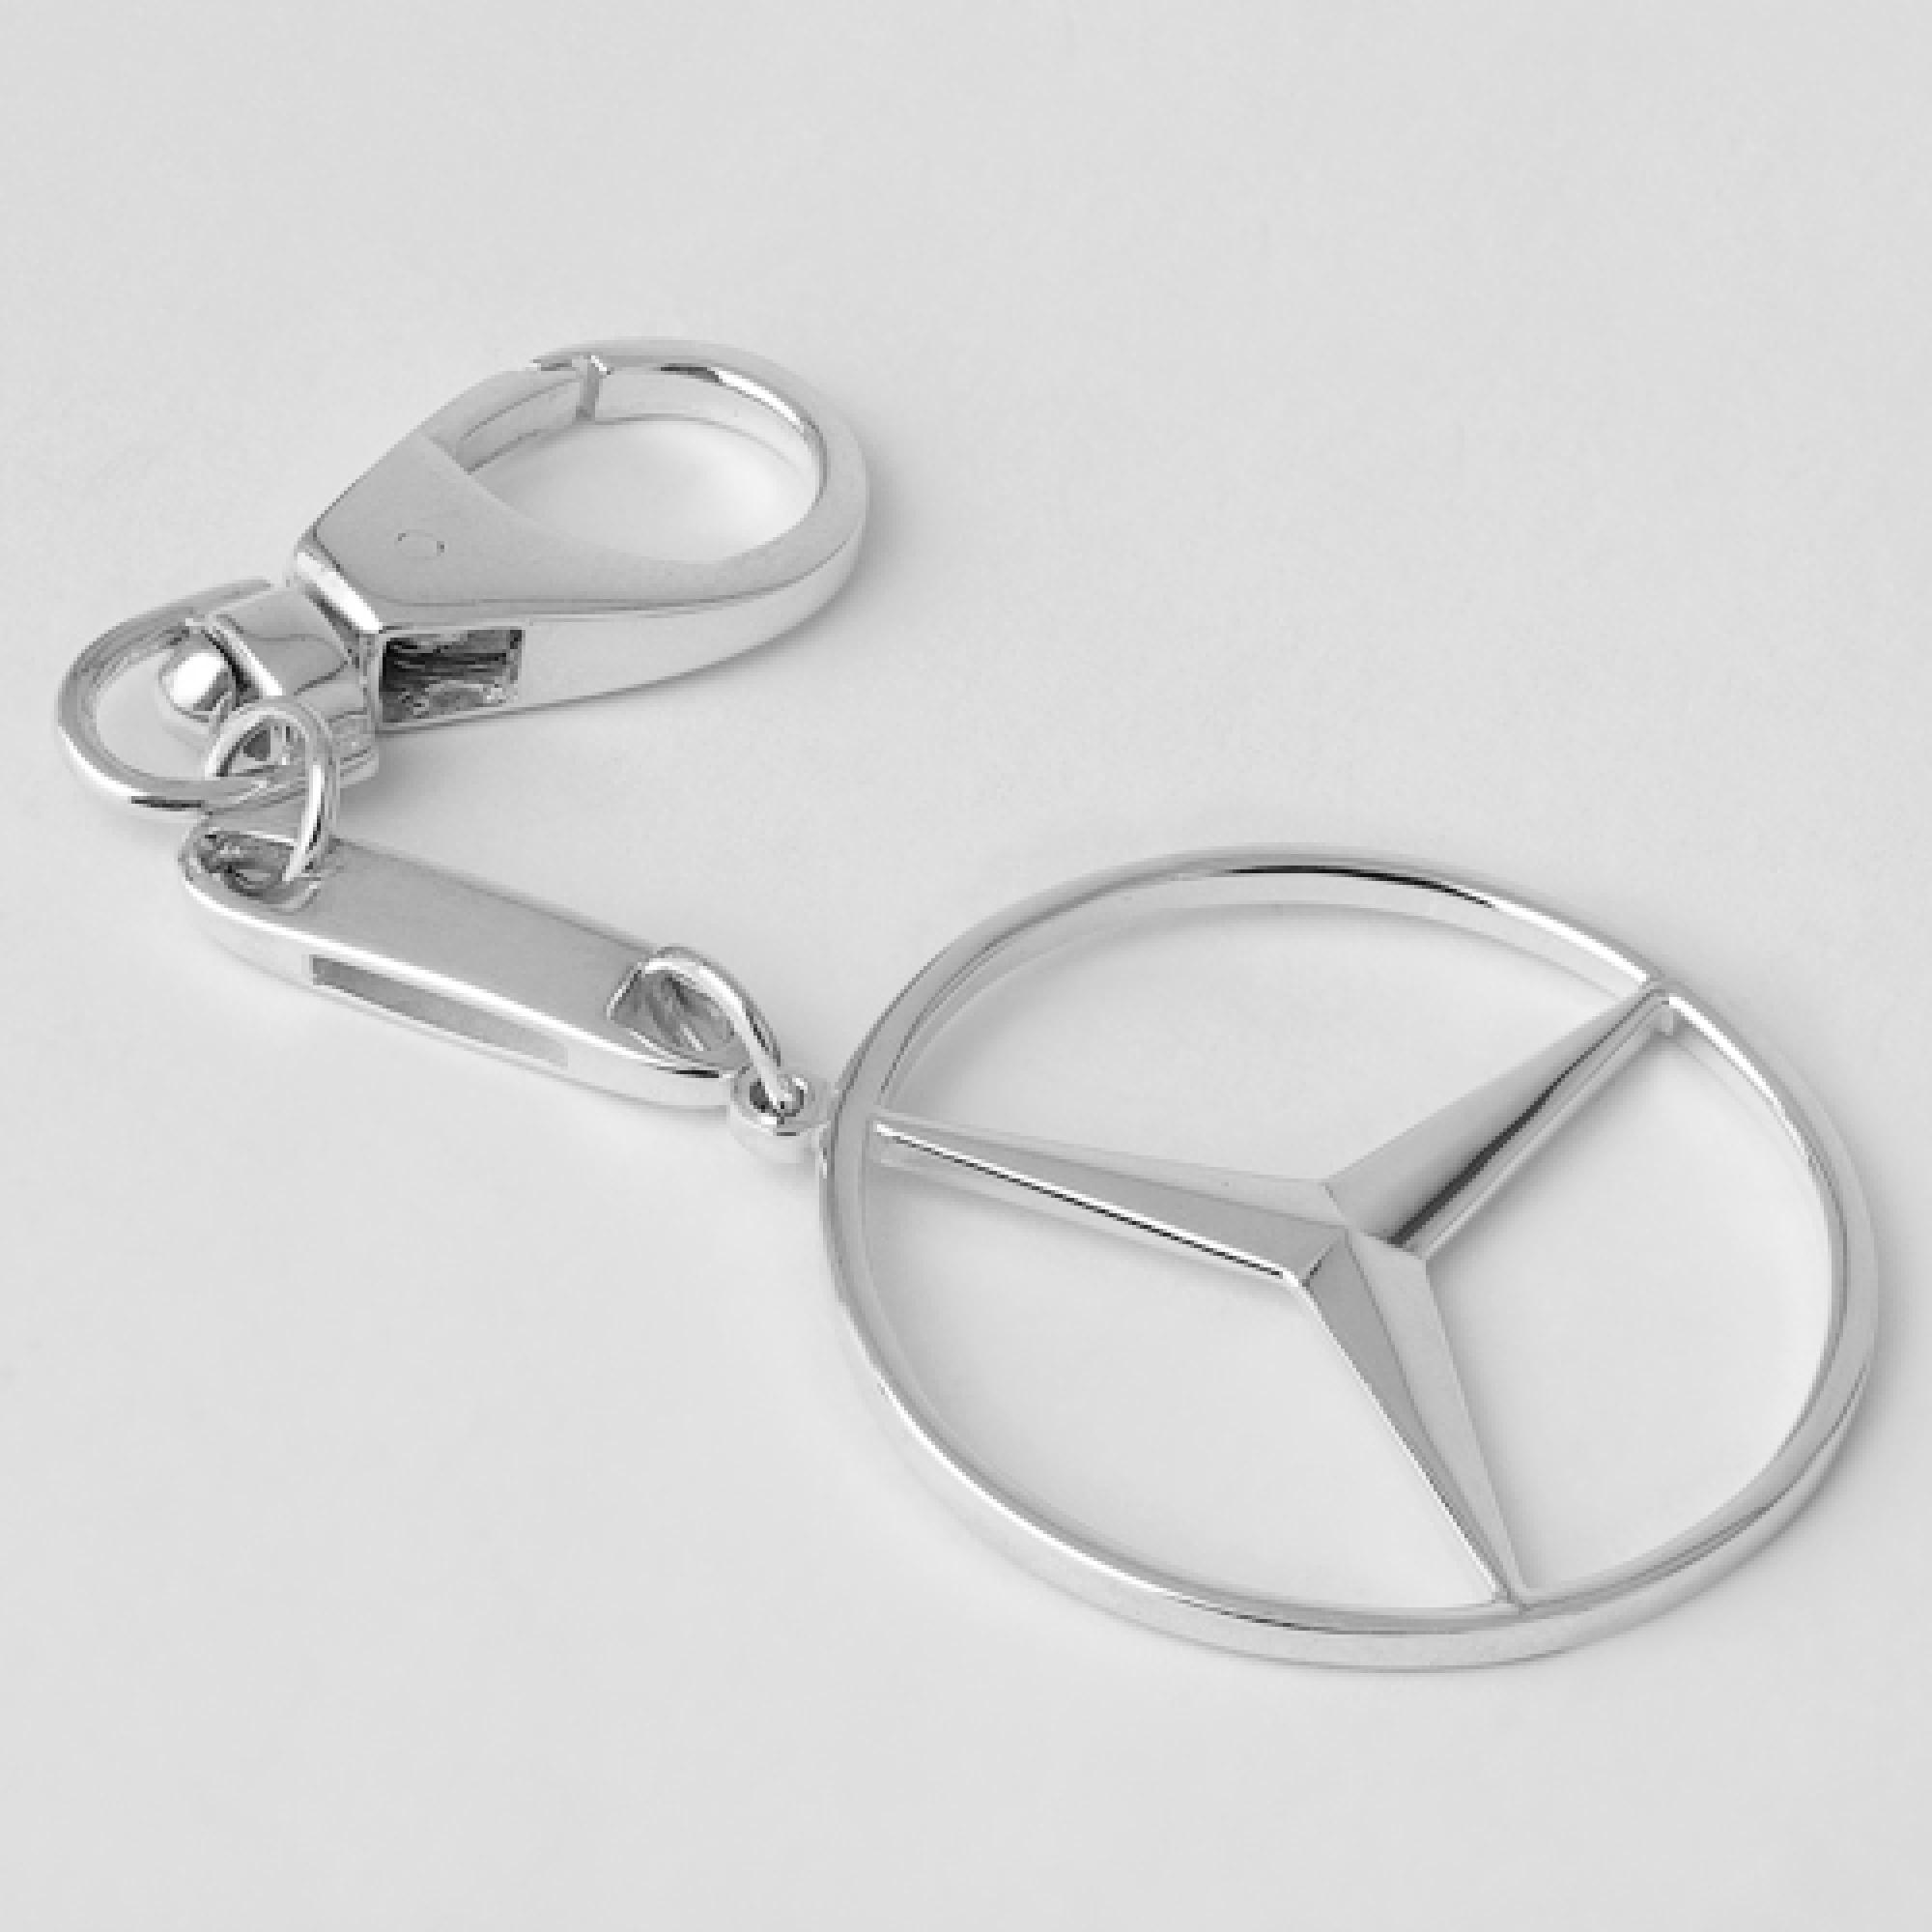 Срібний брелок Mercedes (Мерседес) (9003)